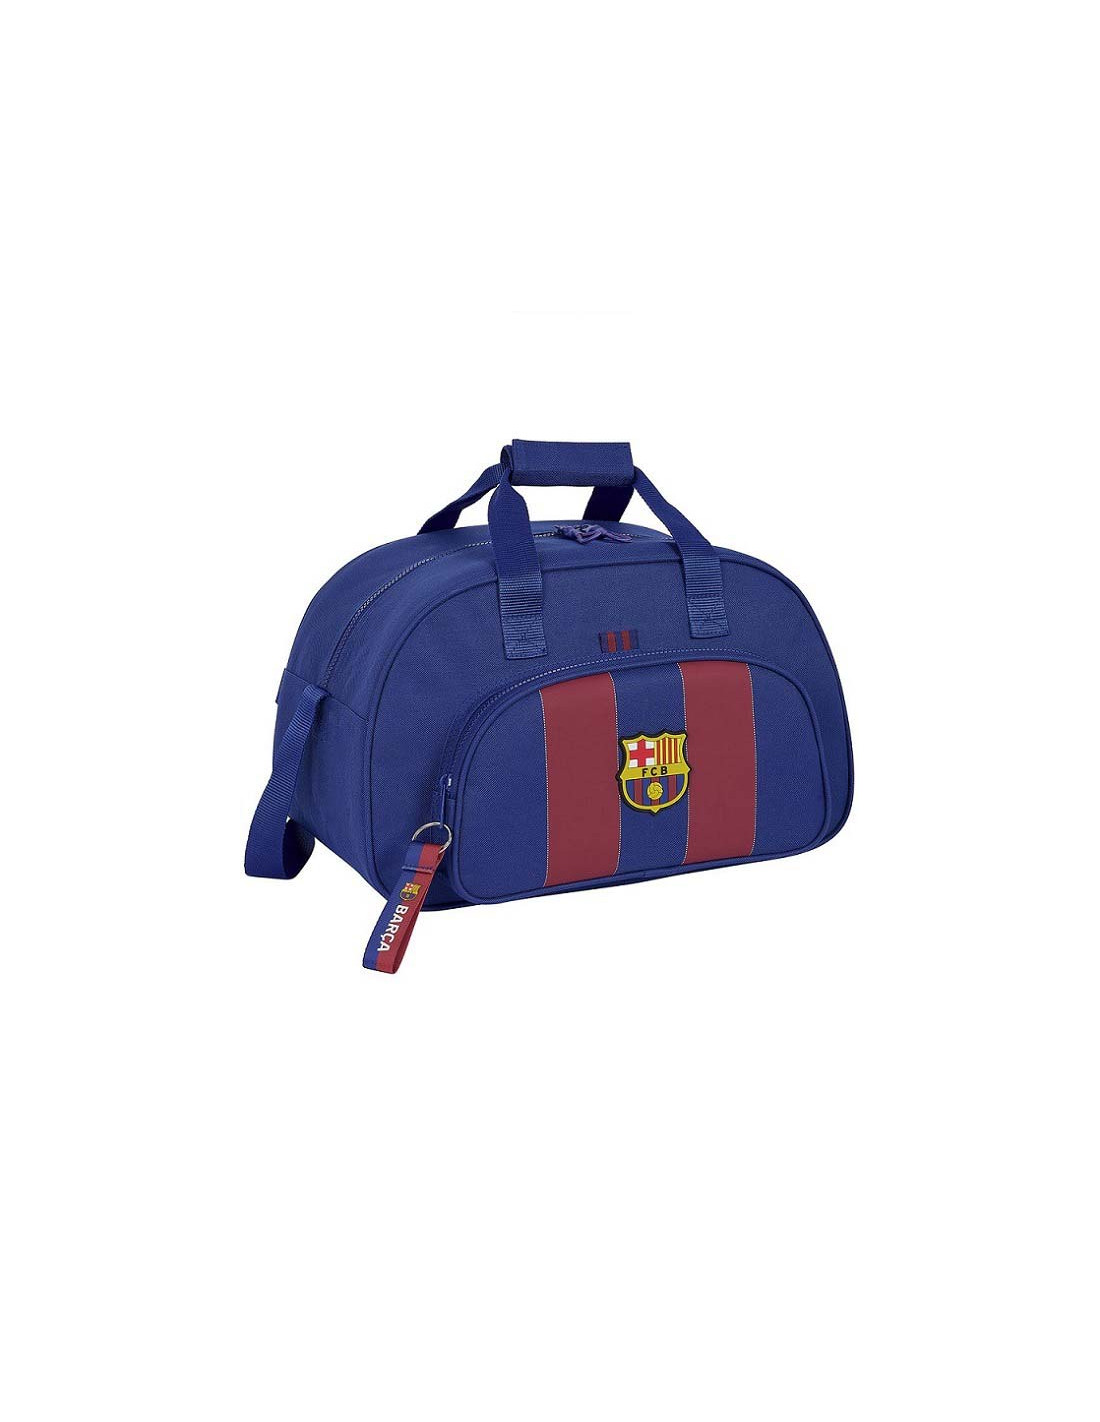 Comprar bolsa de deporte pequeña del FC Barcelona al mejor precio